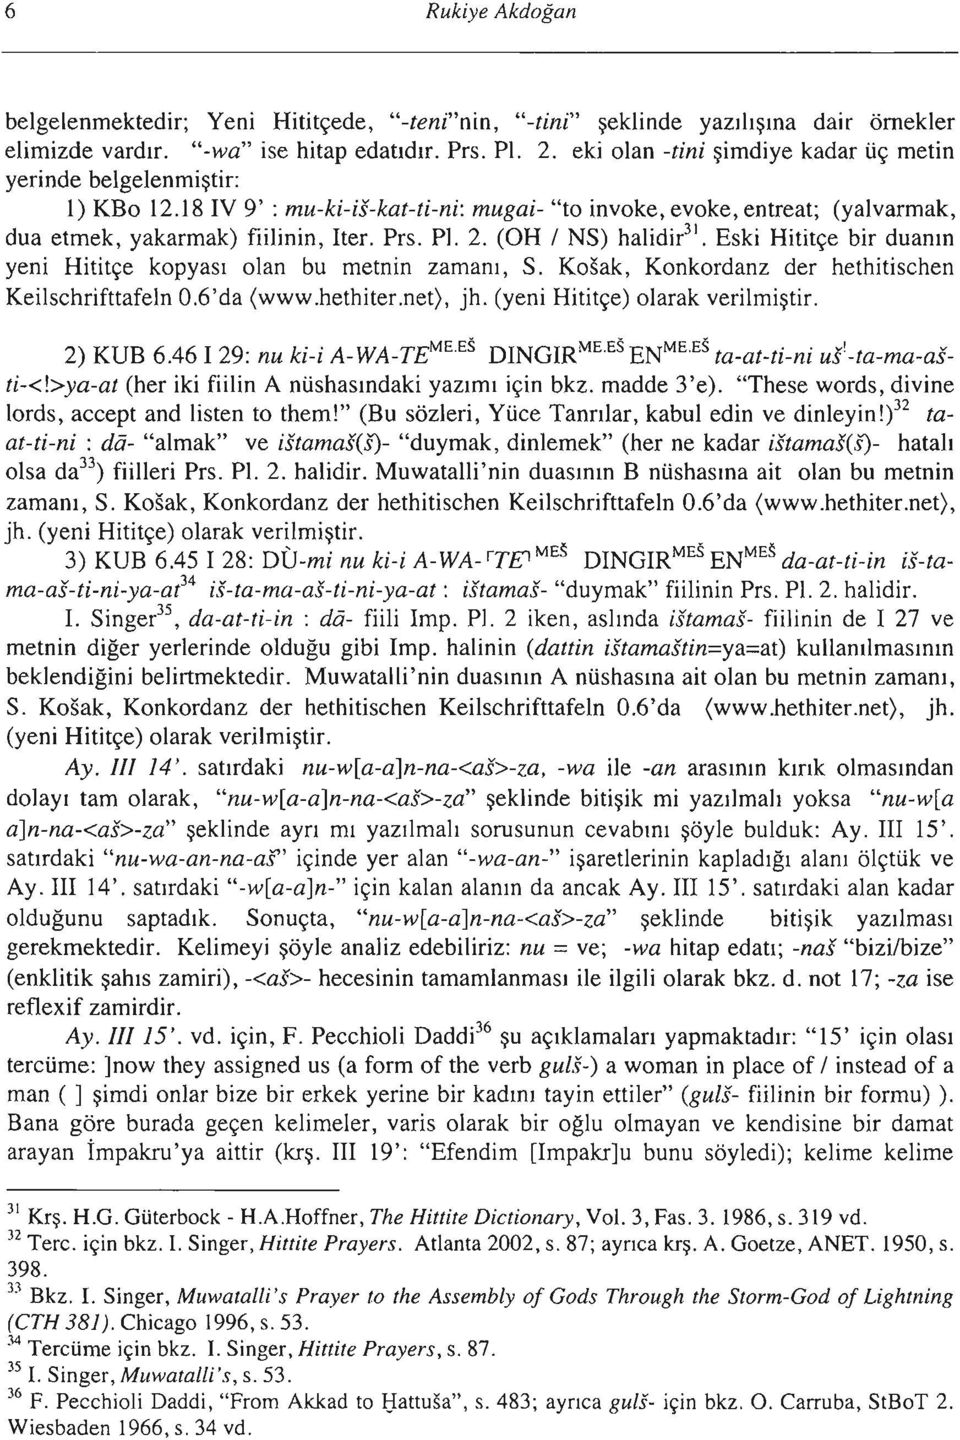 (OH / NS) halidir 3!. Eski Hititçe bir duanın yeni Hititçe kopyası olan bu metnin zamanı, S. Kosak, Konkordanz der hethitischen Keilschrifttafeln O.6'da (www.hethiter.net). jh.